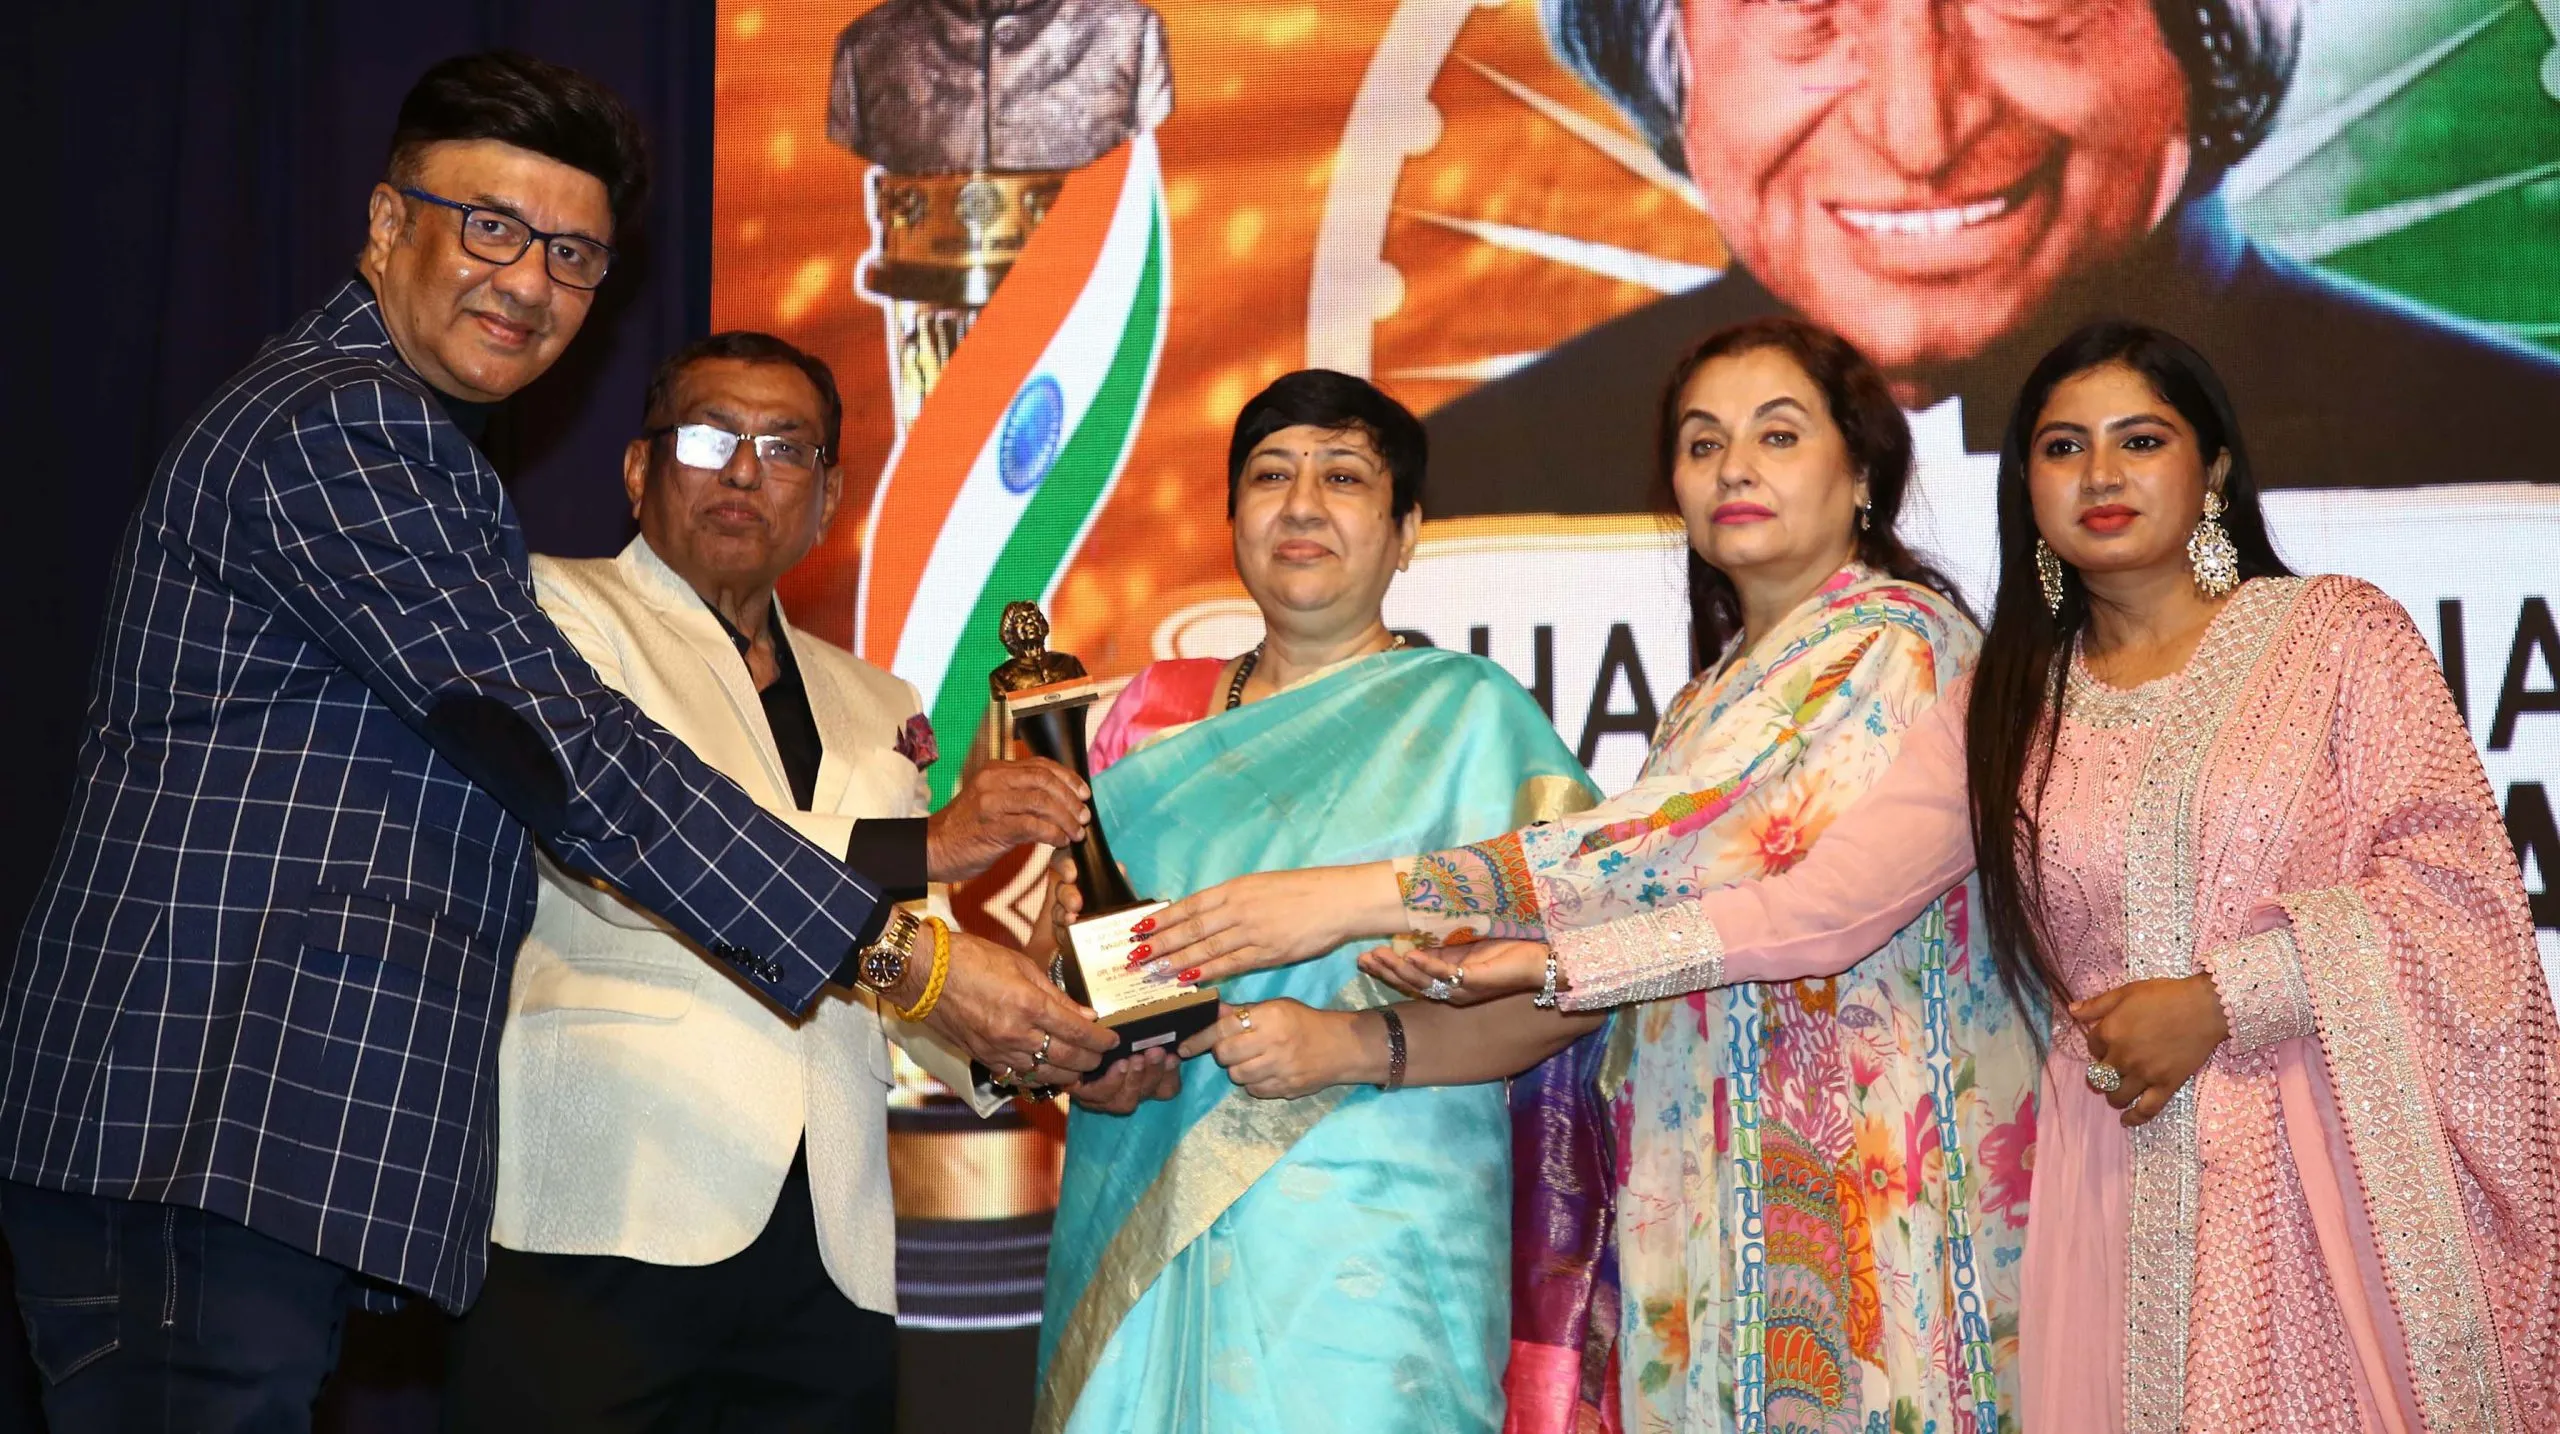 सलमा आगा, उदित नारायण, अनु मलिक, दीपशिखा नागपाल, मधुश्री, निहारिका रायजादा को भारत रत्न डॉ.एपीजे अब्दुल कलाम पुरस्कार से नवाजा गया